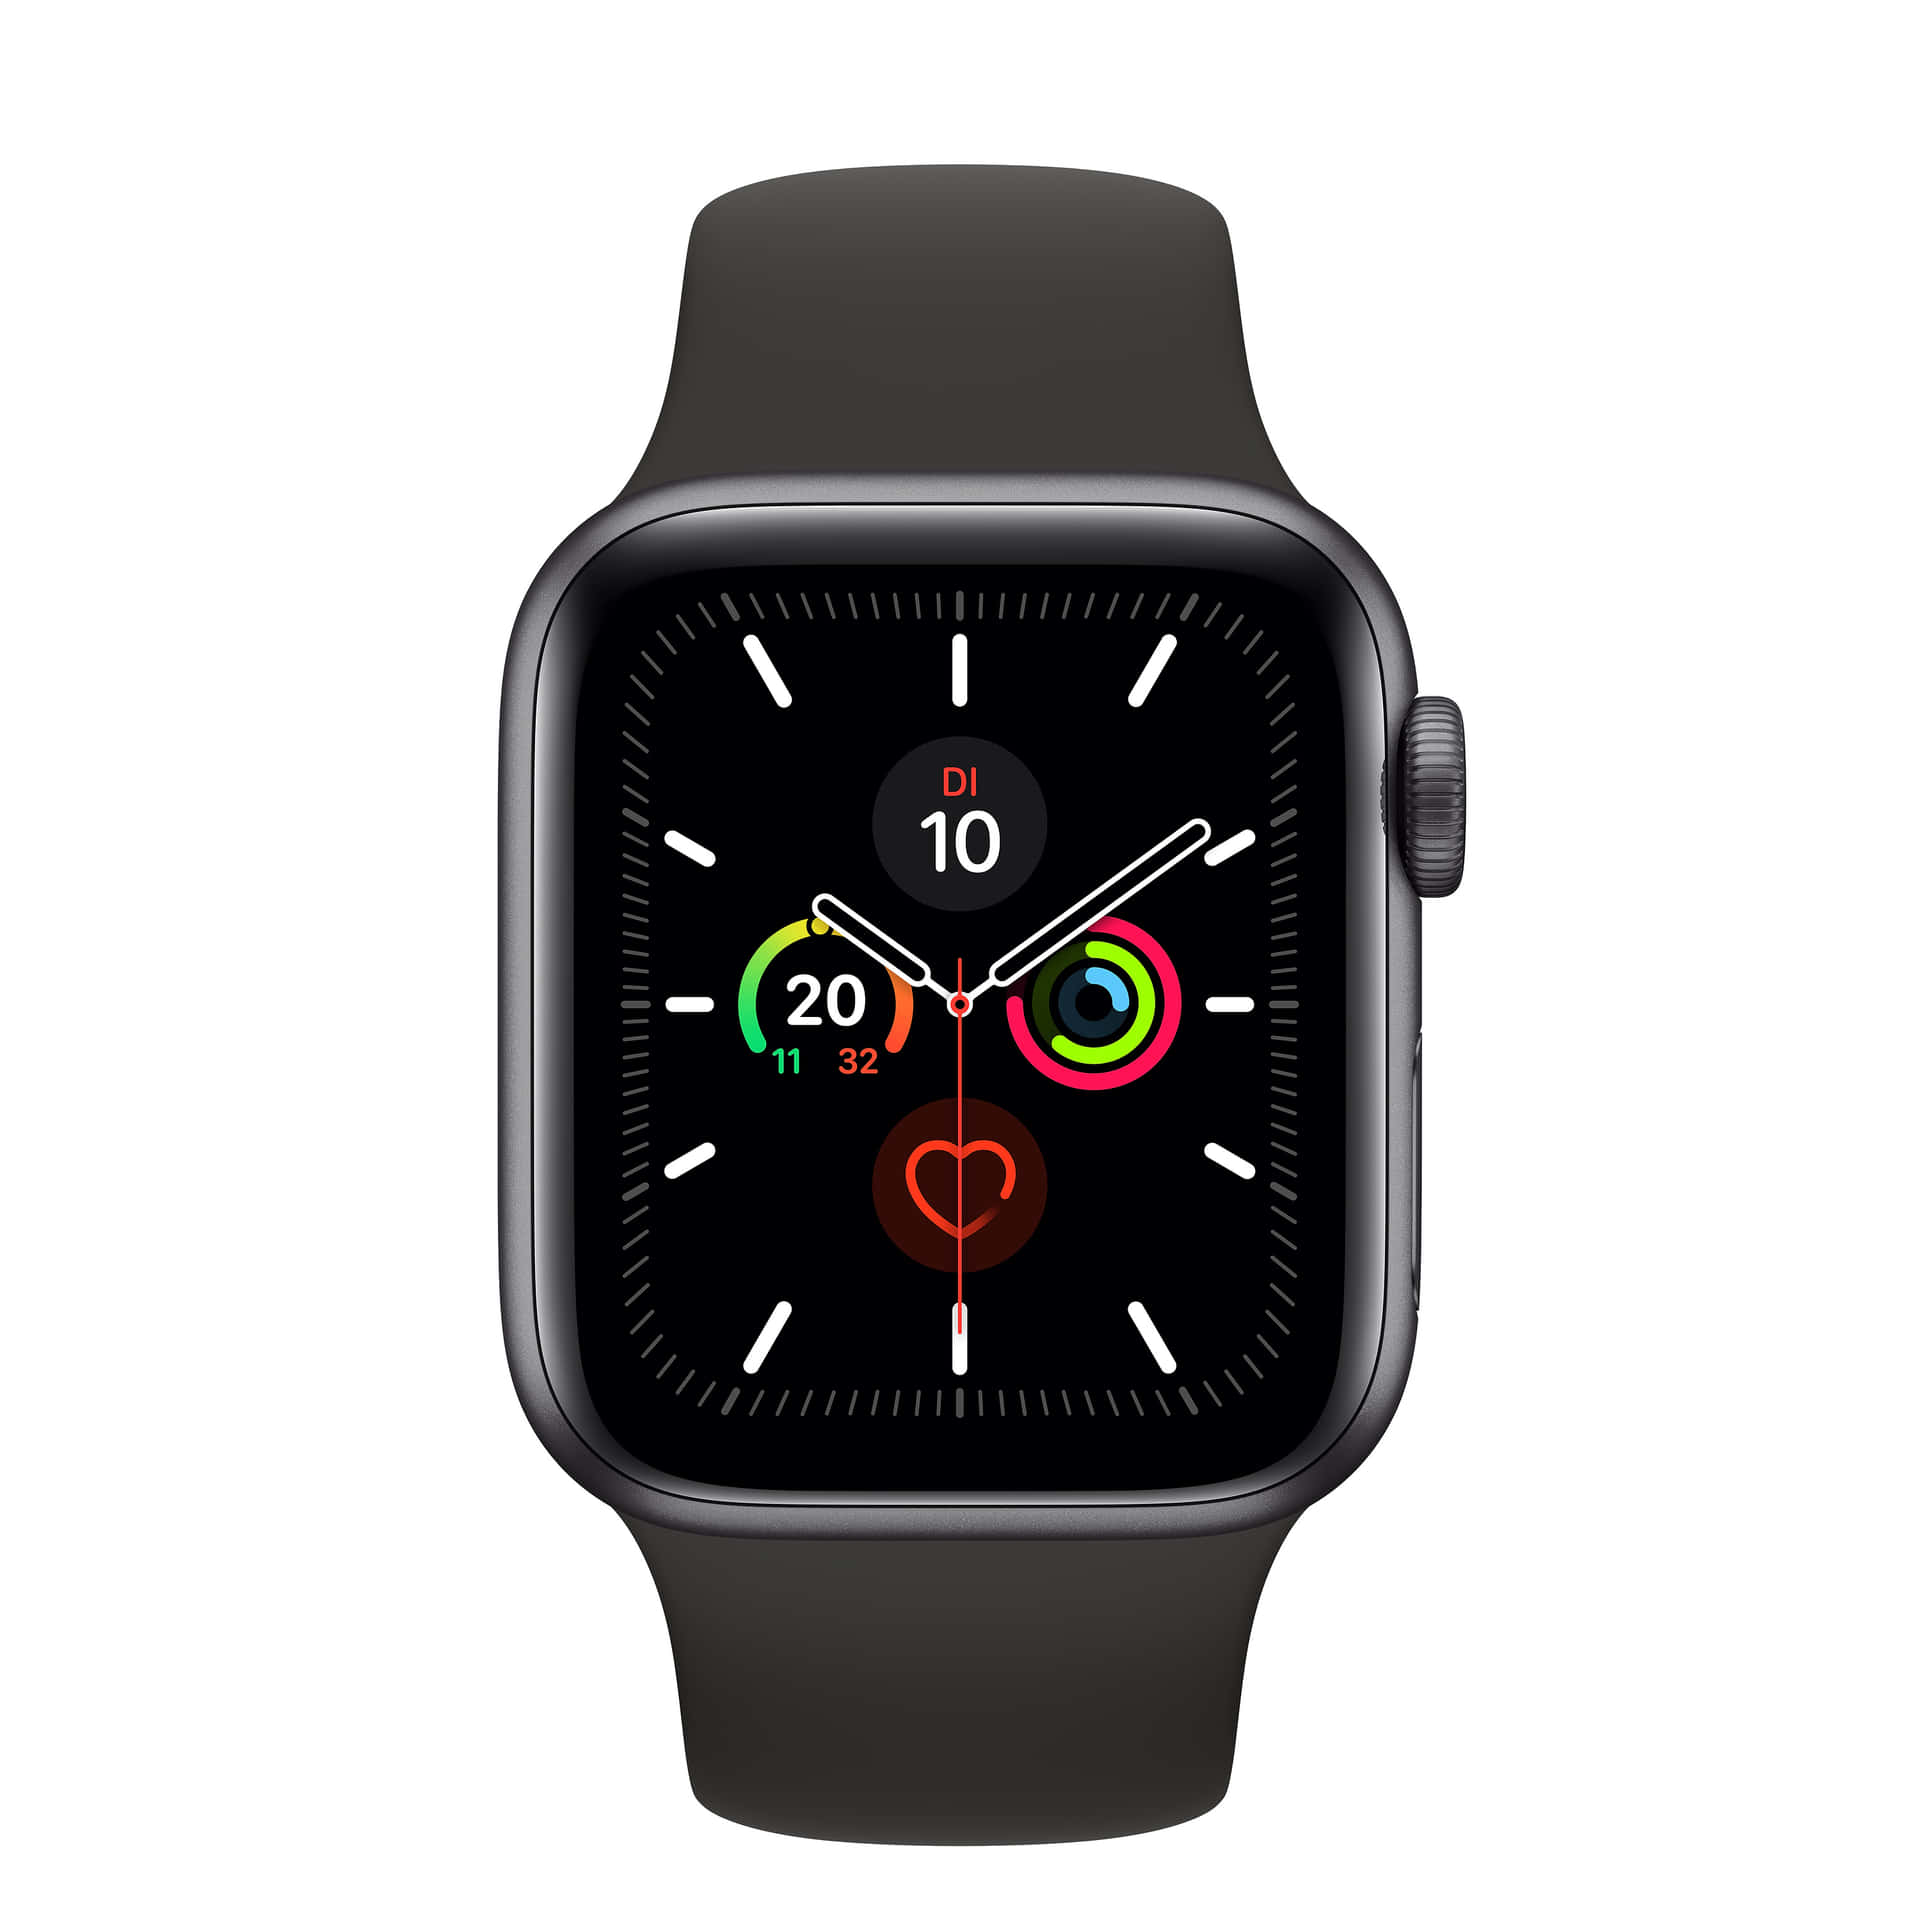 Applewatch Series 5 - Schwarz.